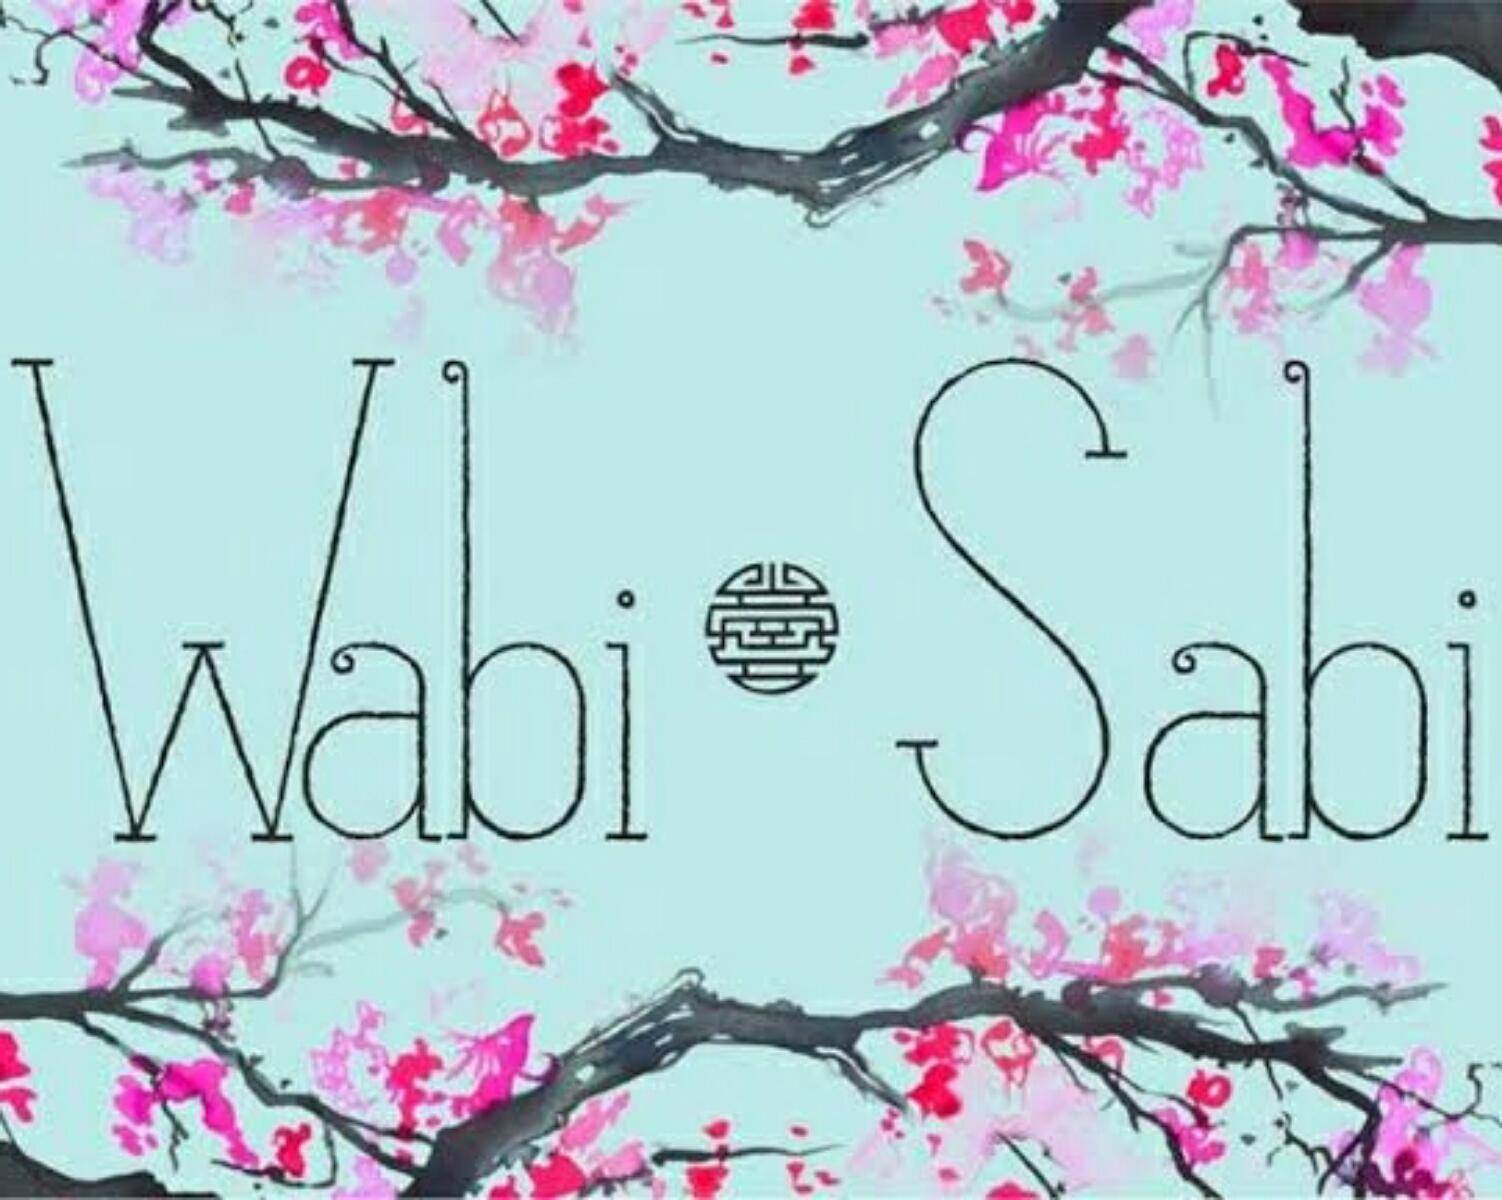 Individual concept of wabi sabi: